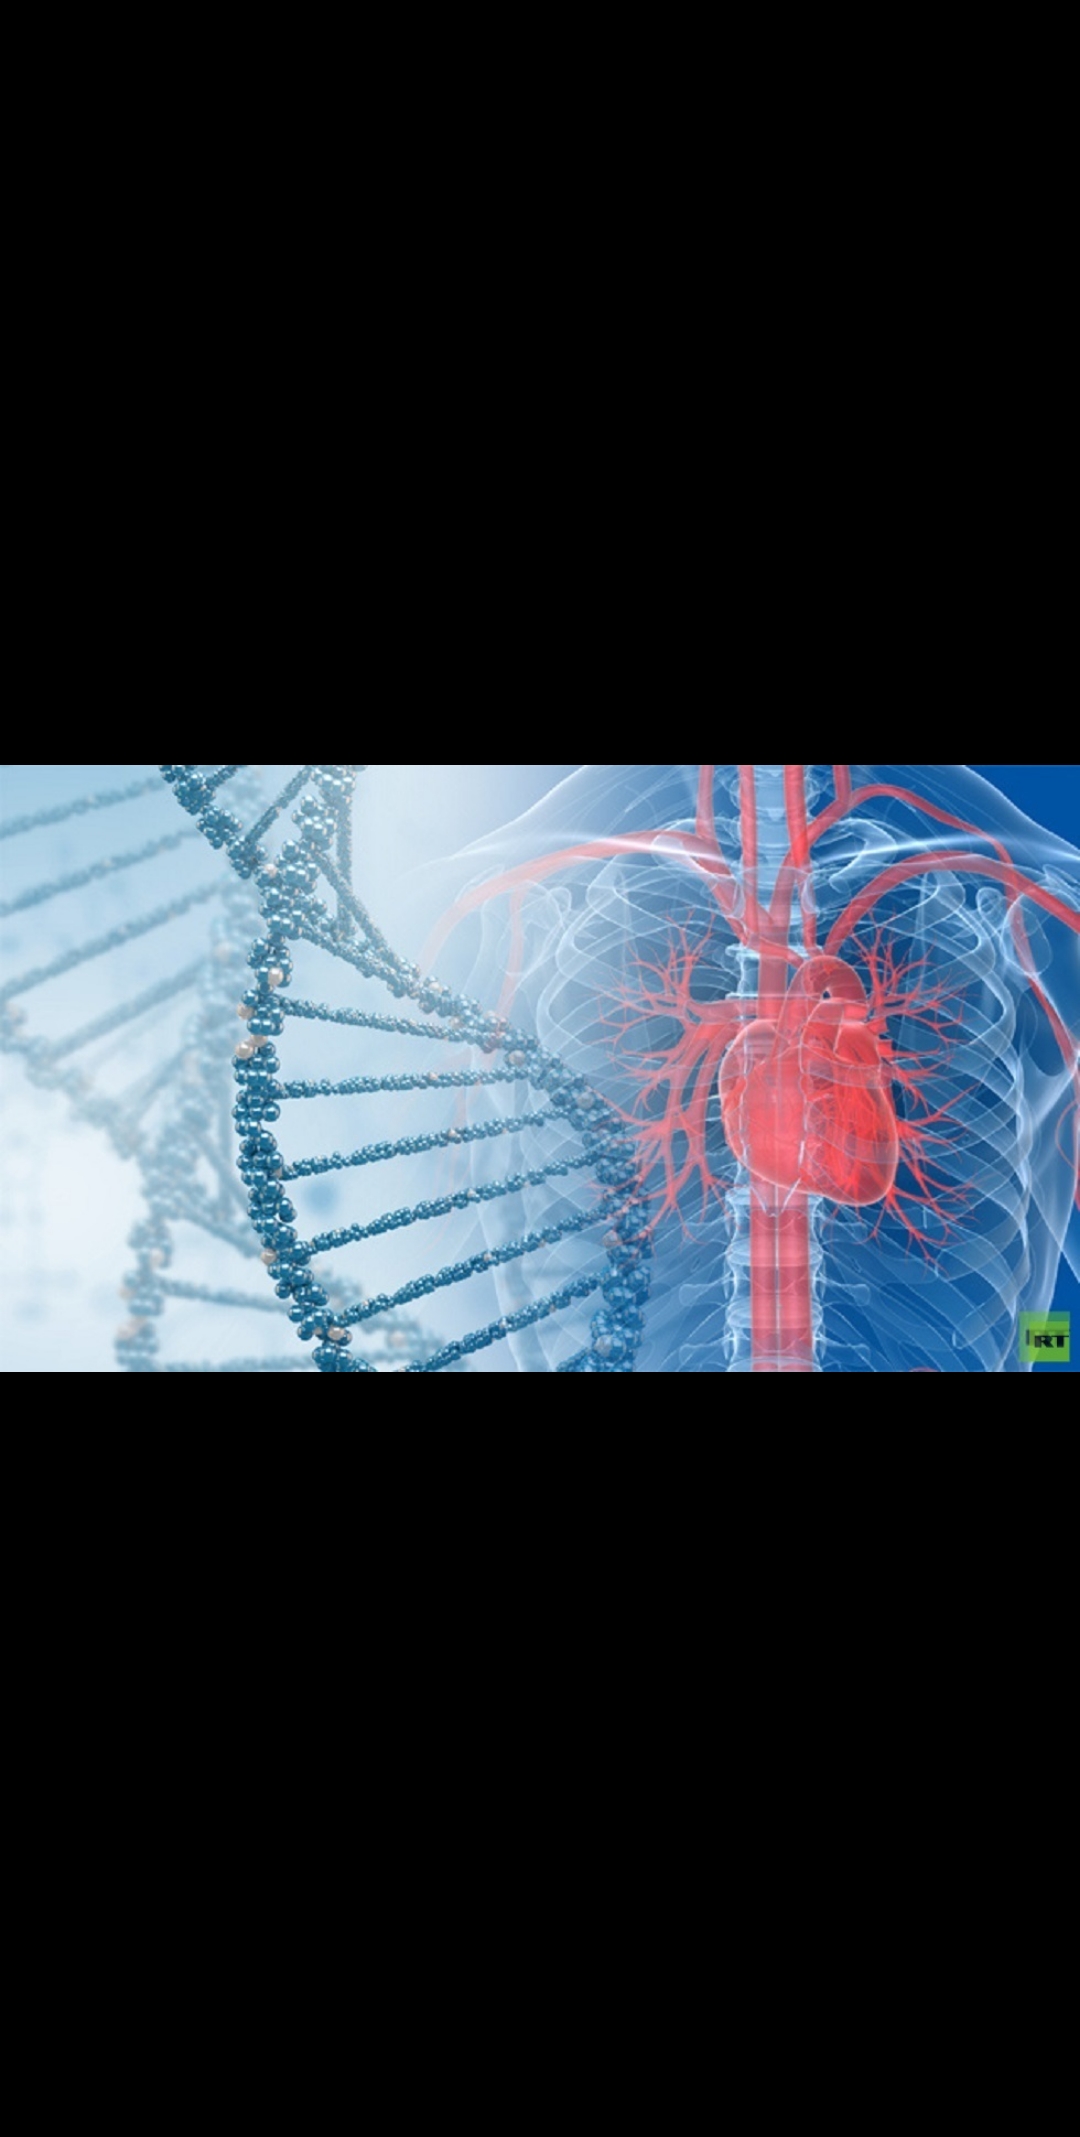 اكتشاف طريقة للوقاية من النوبات القلبية والجلطات الدماغية